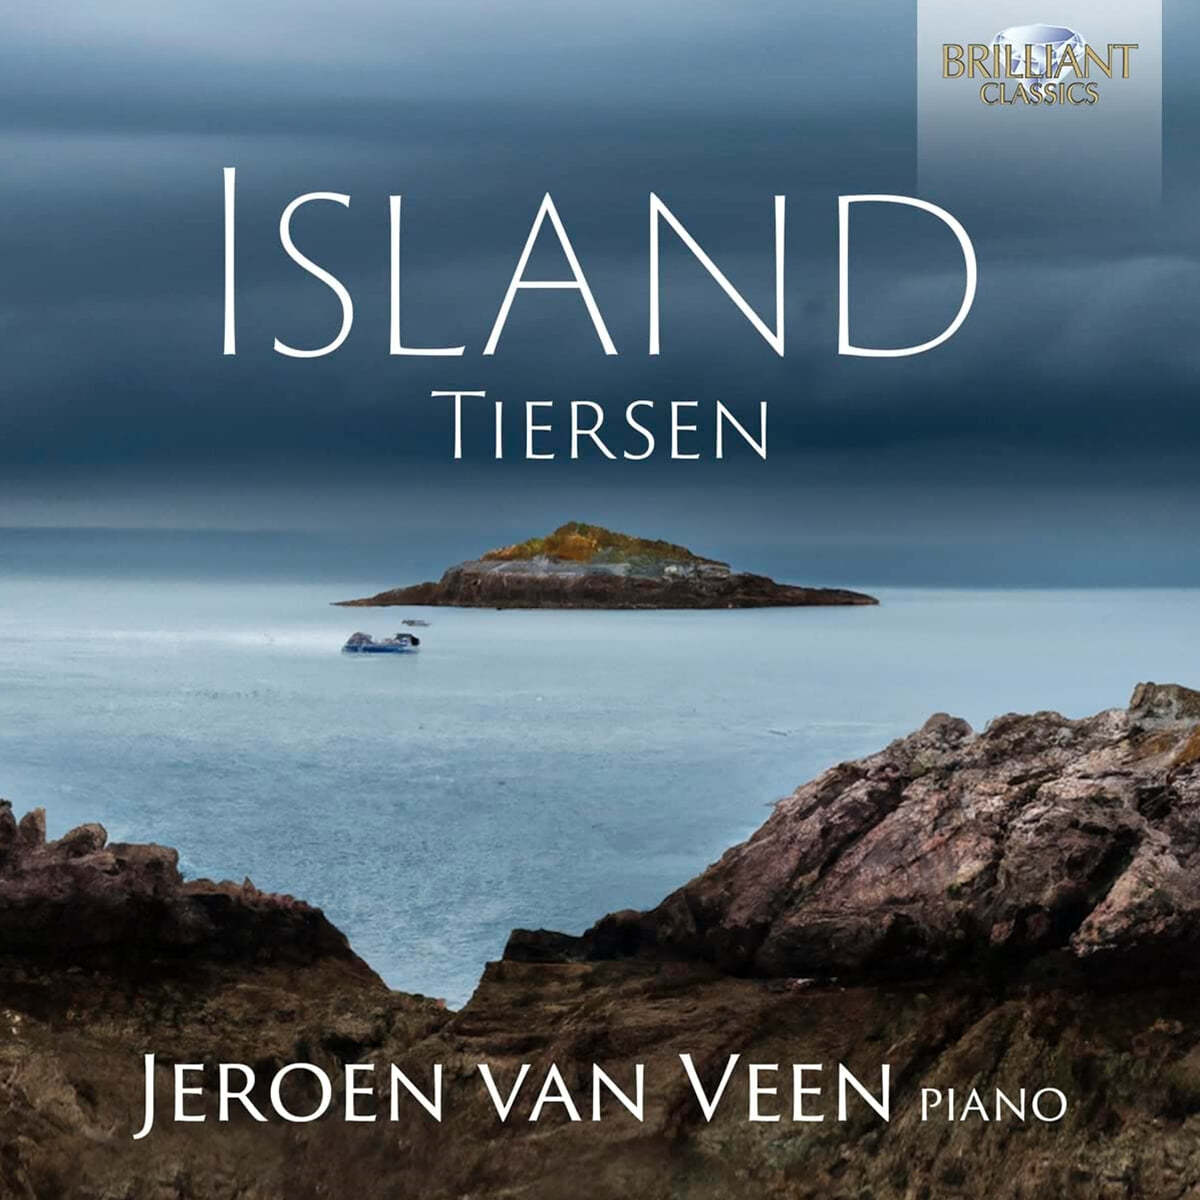 Jeroen van Veen 얀 티에르상: ‘섬’ (Yann Tiersen: Island) 